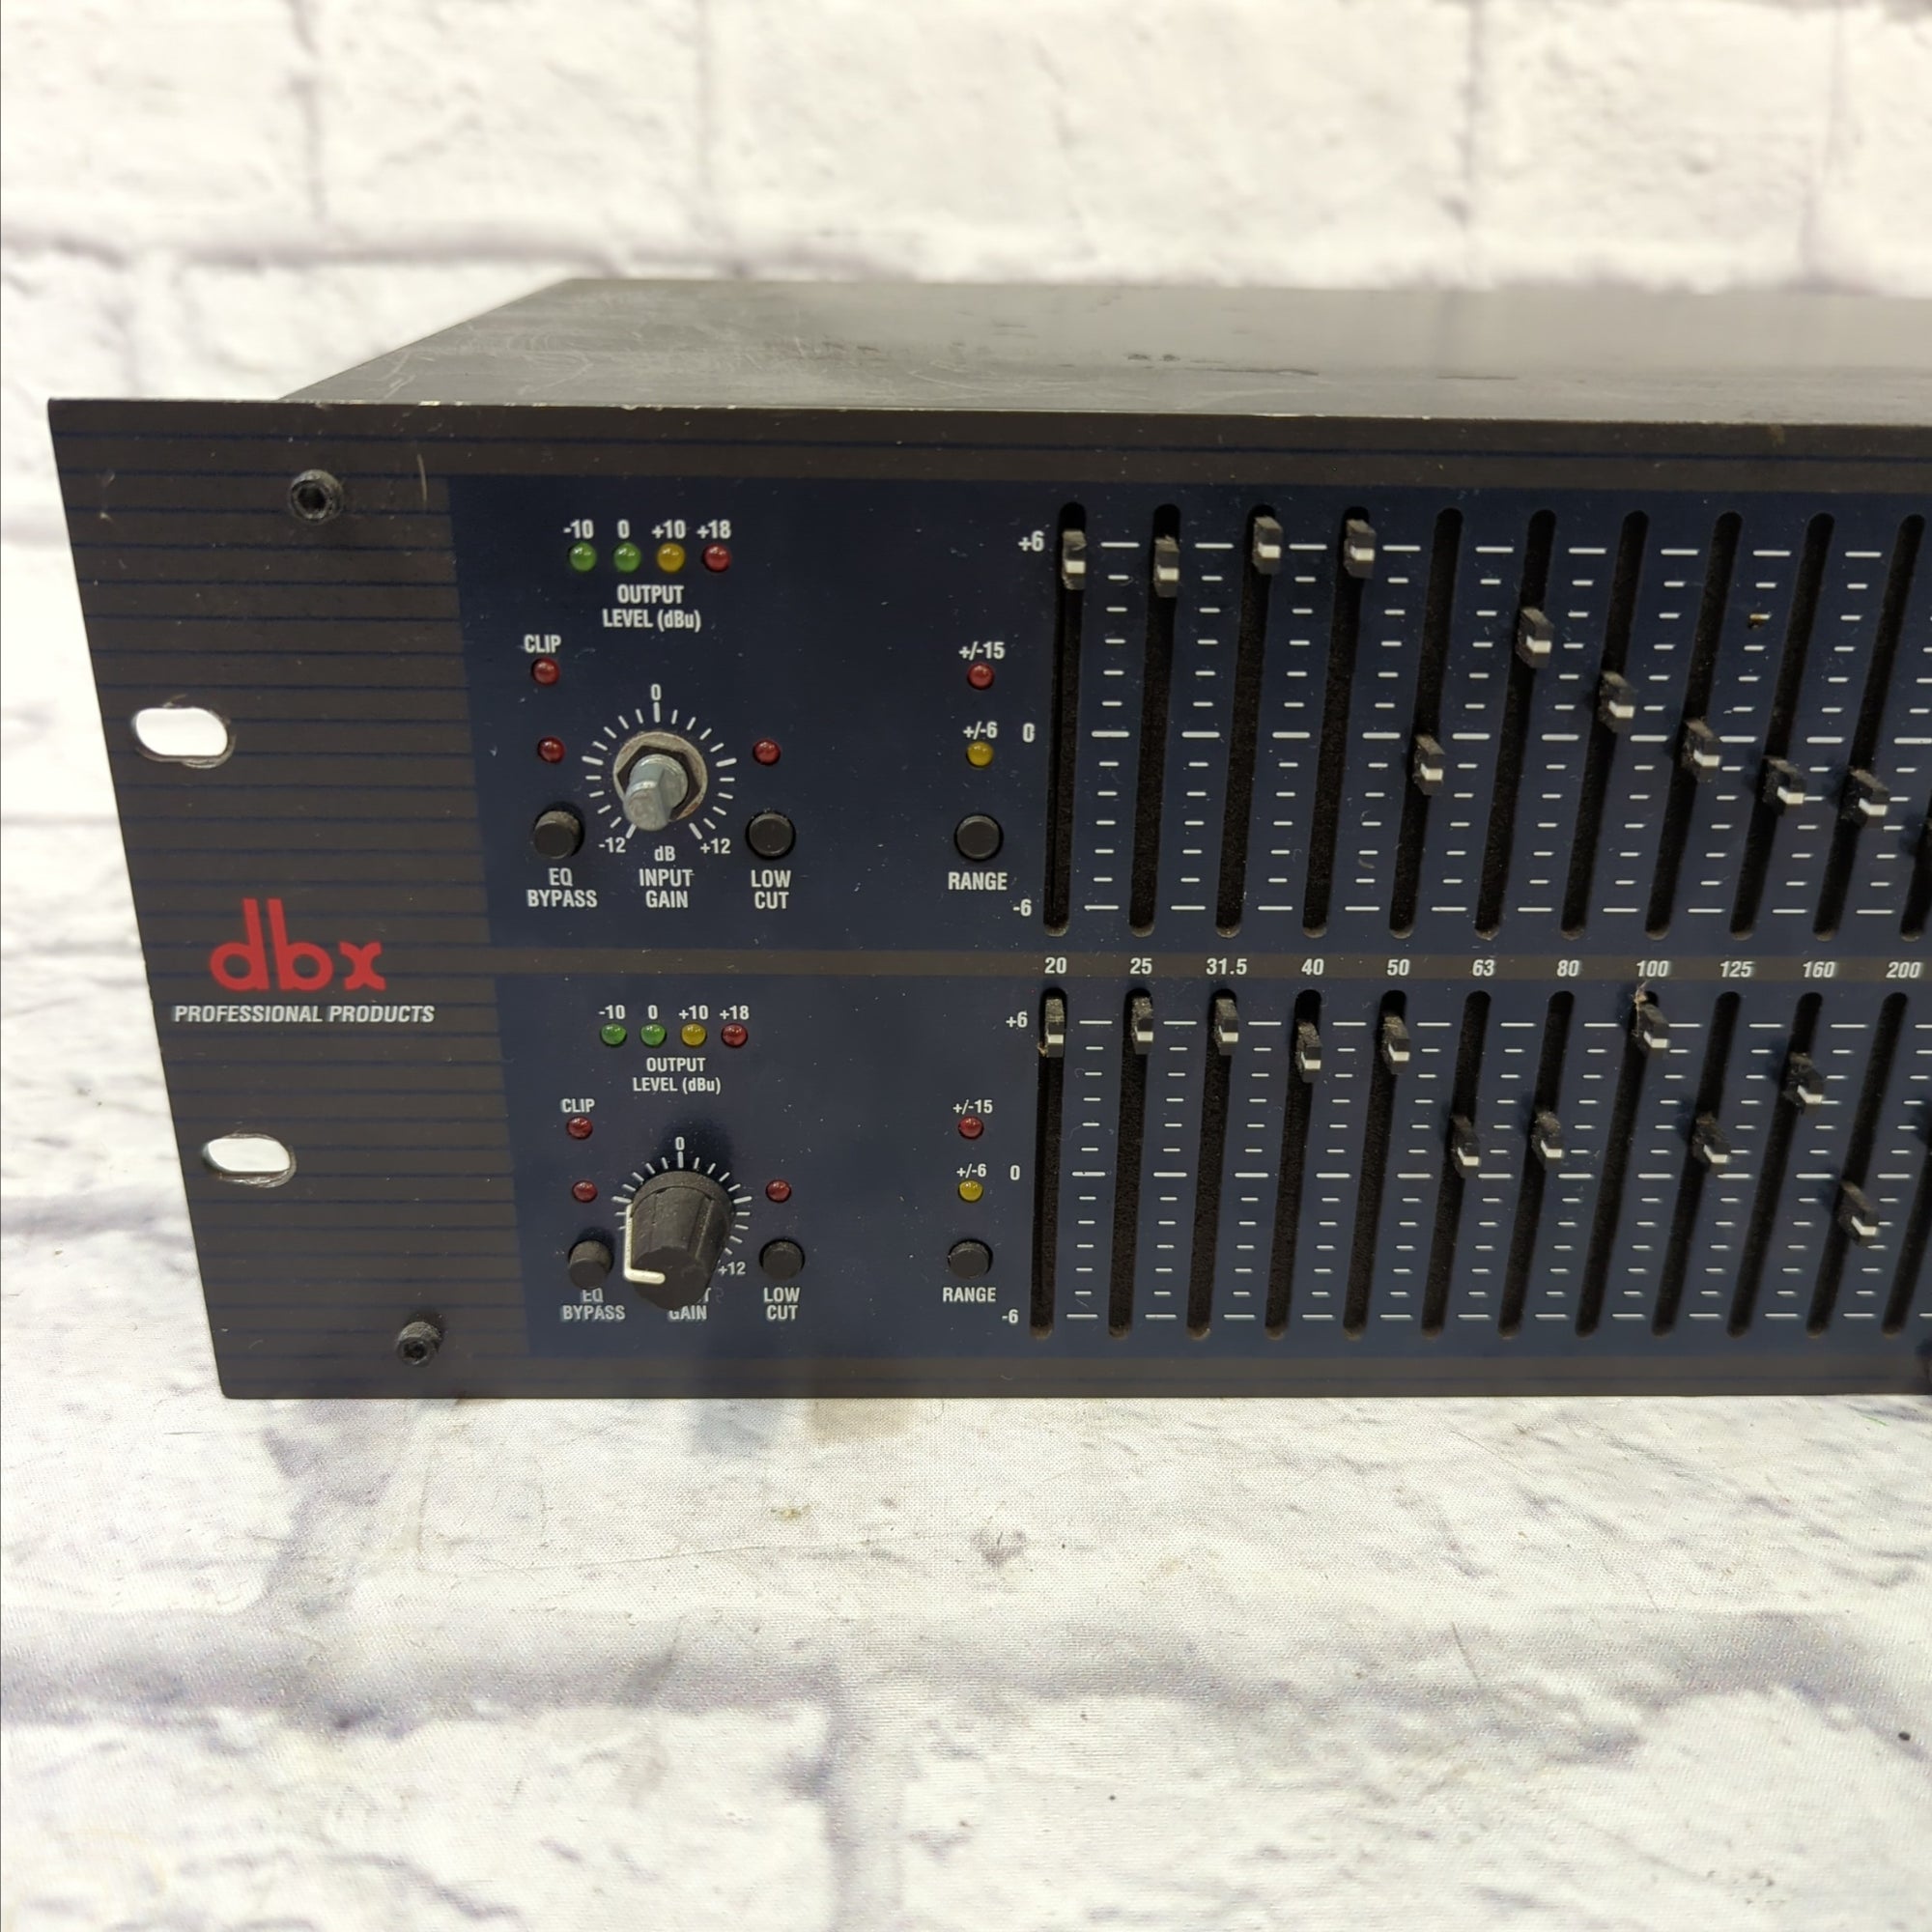 ブランド雑貨総合 dbxグラフィックイコライザー(model 1231) 配信機器 